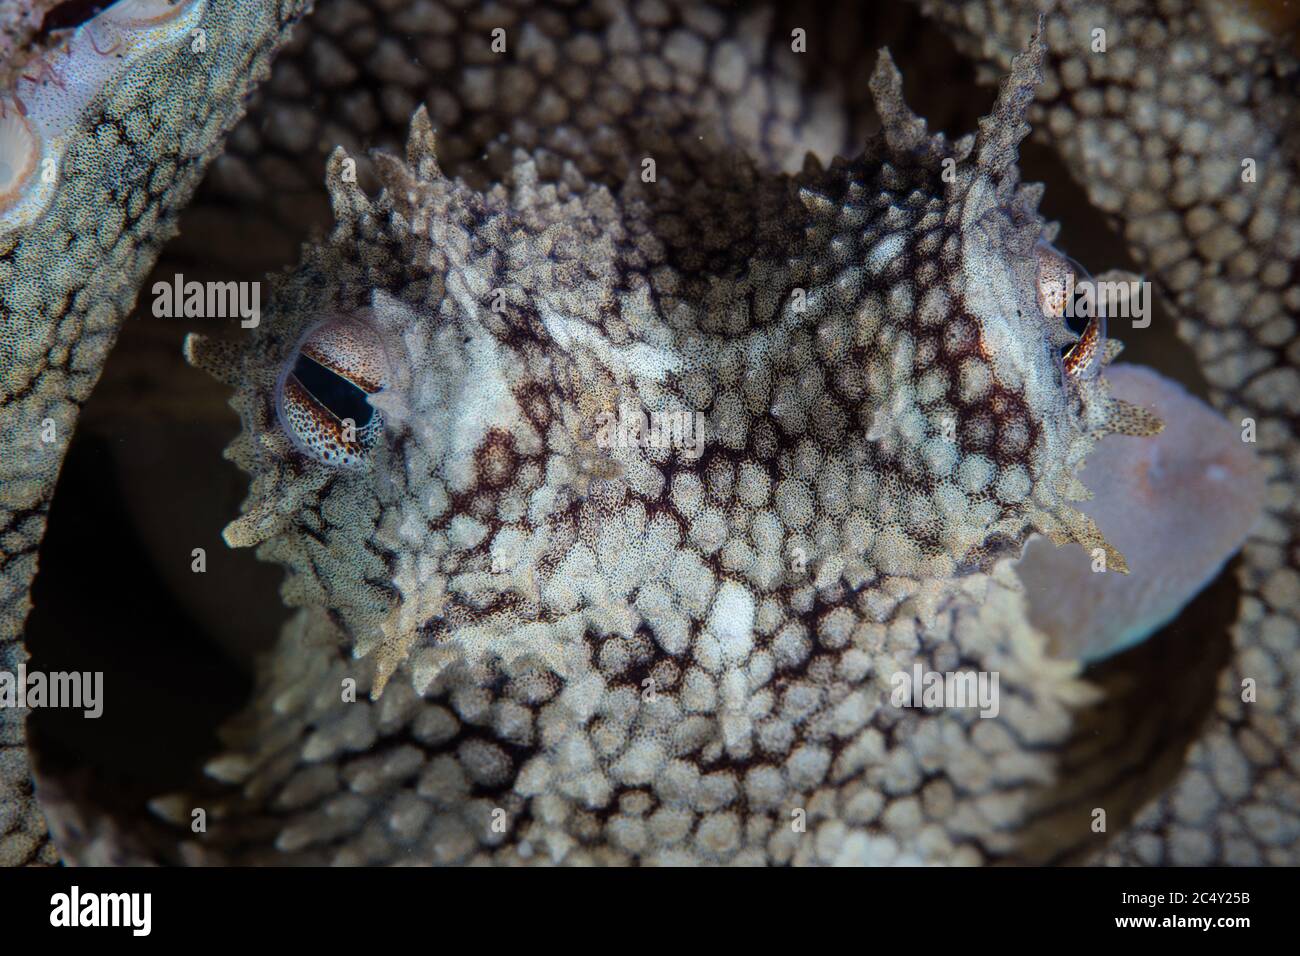 Detail der Augen und des Siphons eines Kokosnusskraken, Amphiocrake marginatus, in Indonesien. Dieses Tier verwendet oft leere Kokosnussschalen für Höhlen. Stockfoto